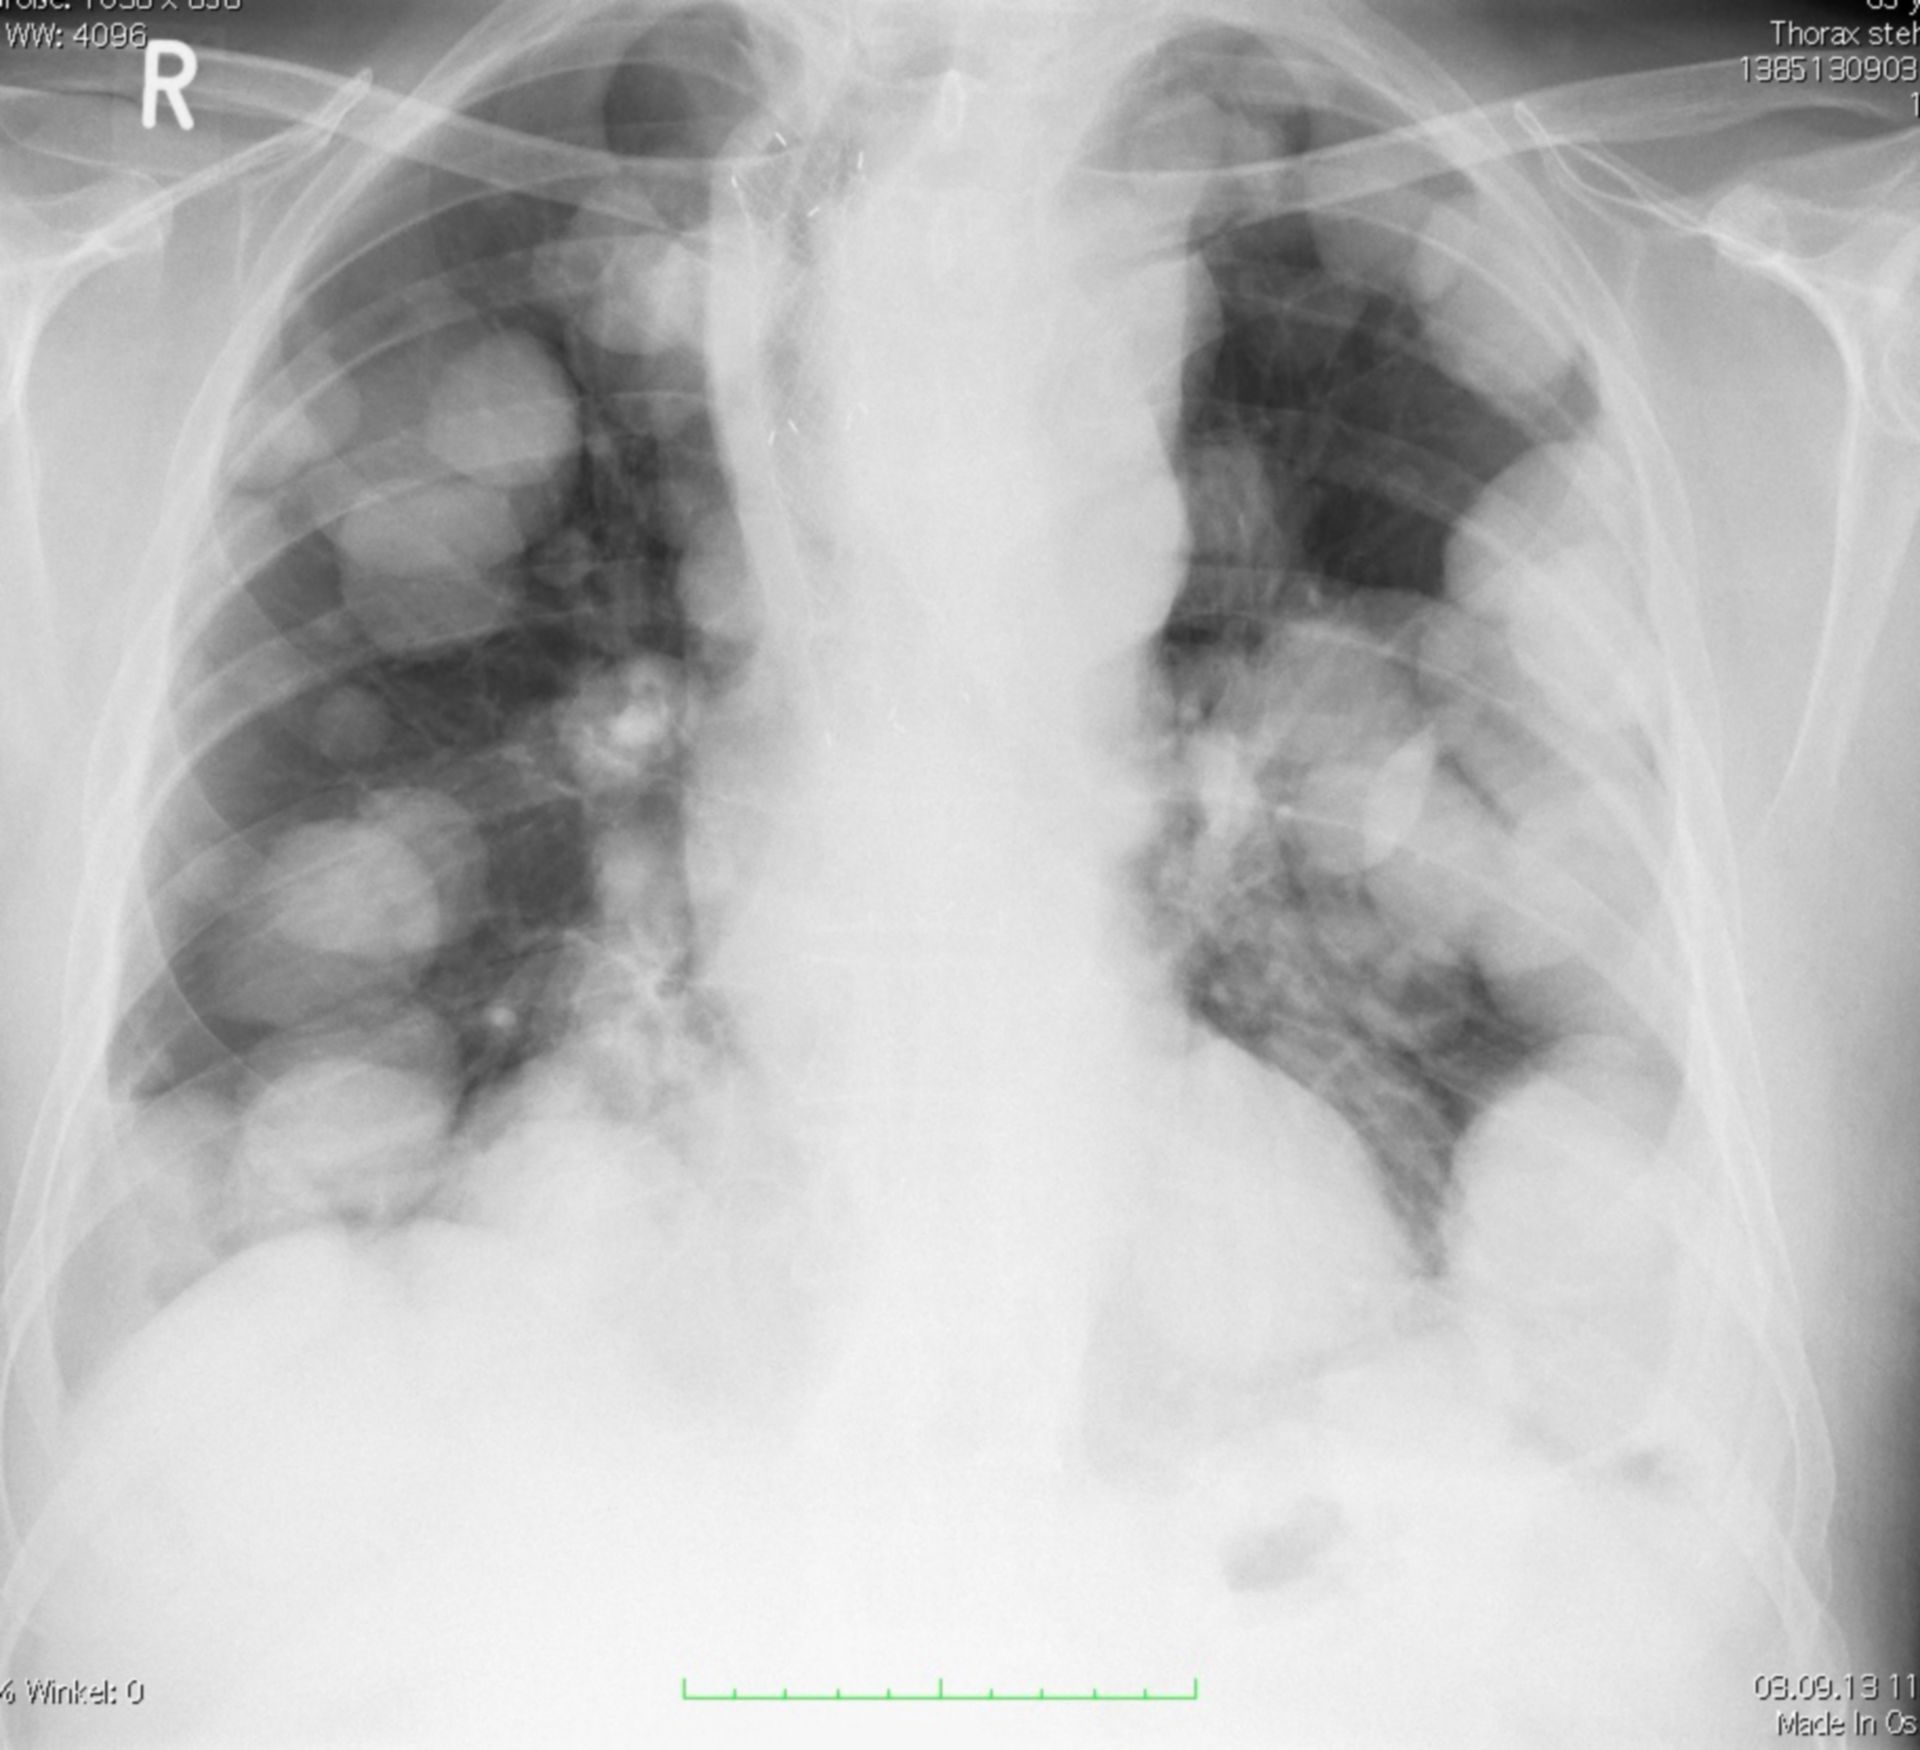 Enfermedad metastásica de los pulmones en cácner esofagico 2